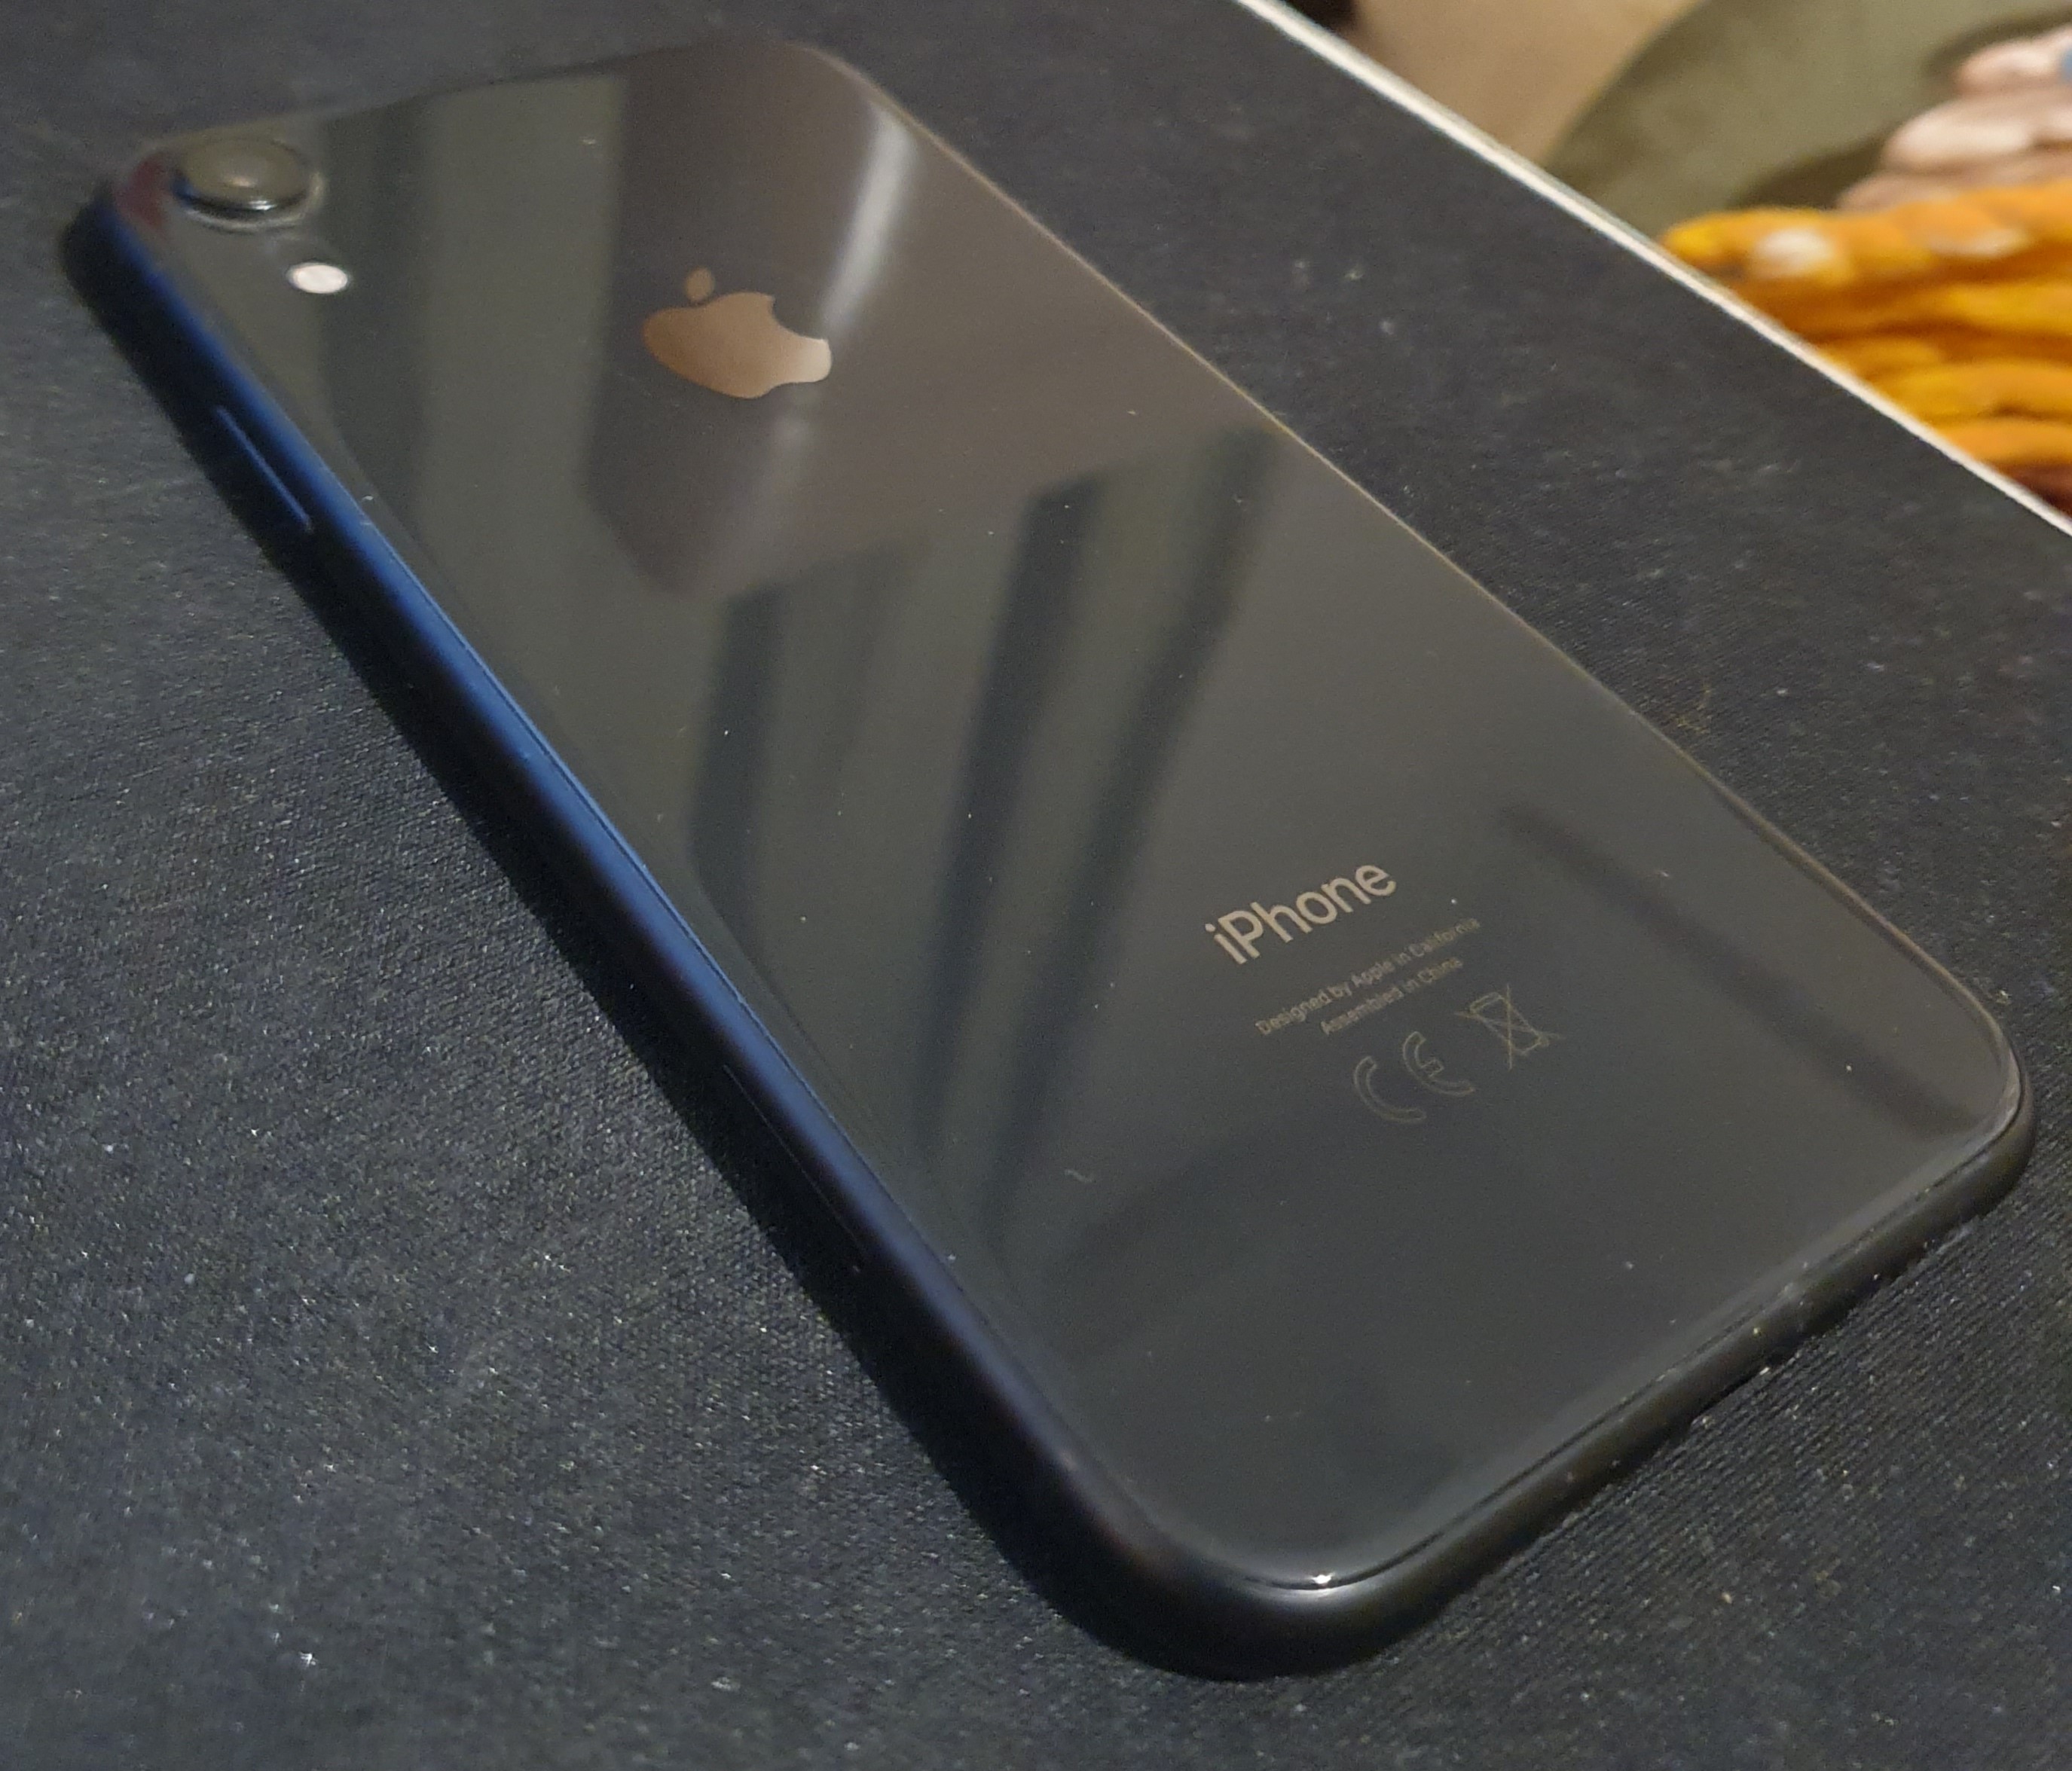 Satılık iPhone Xr siyah 64 gb kutulu temiz / FİYAT DÜŞTÜ | DonanımHaber  Forum